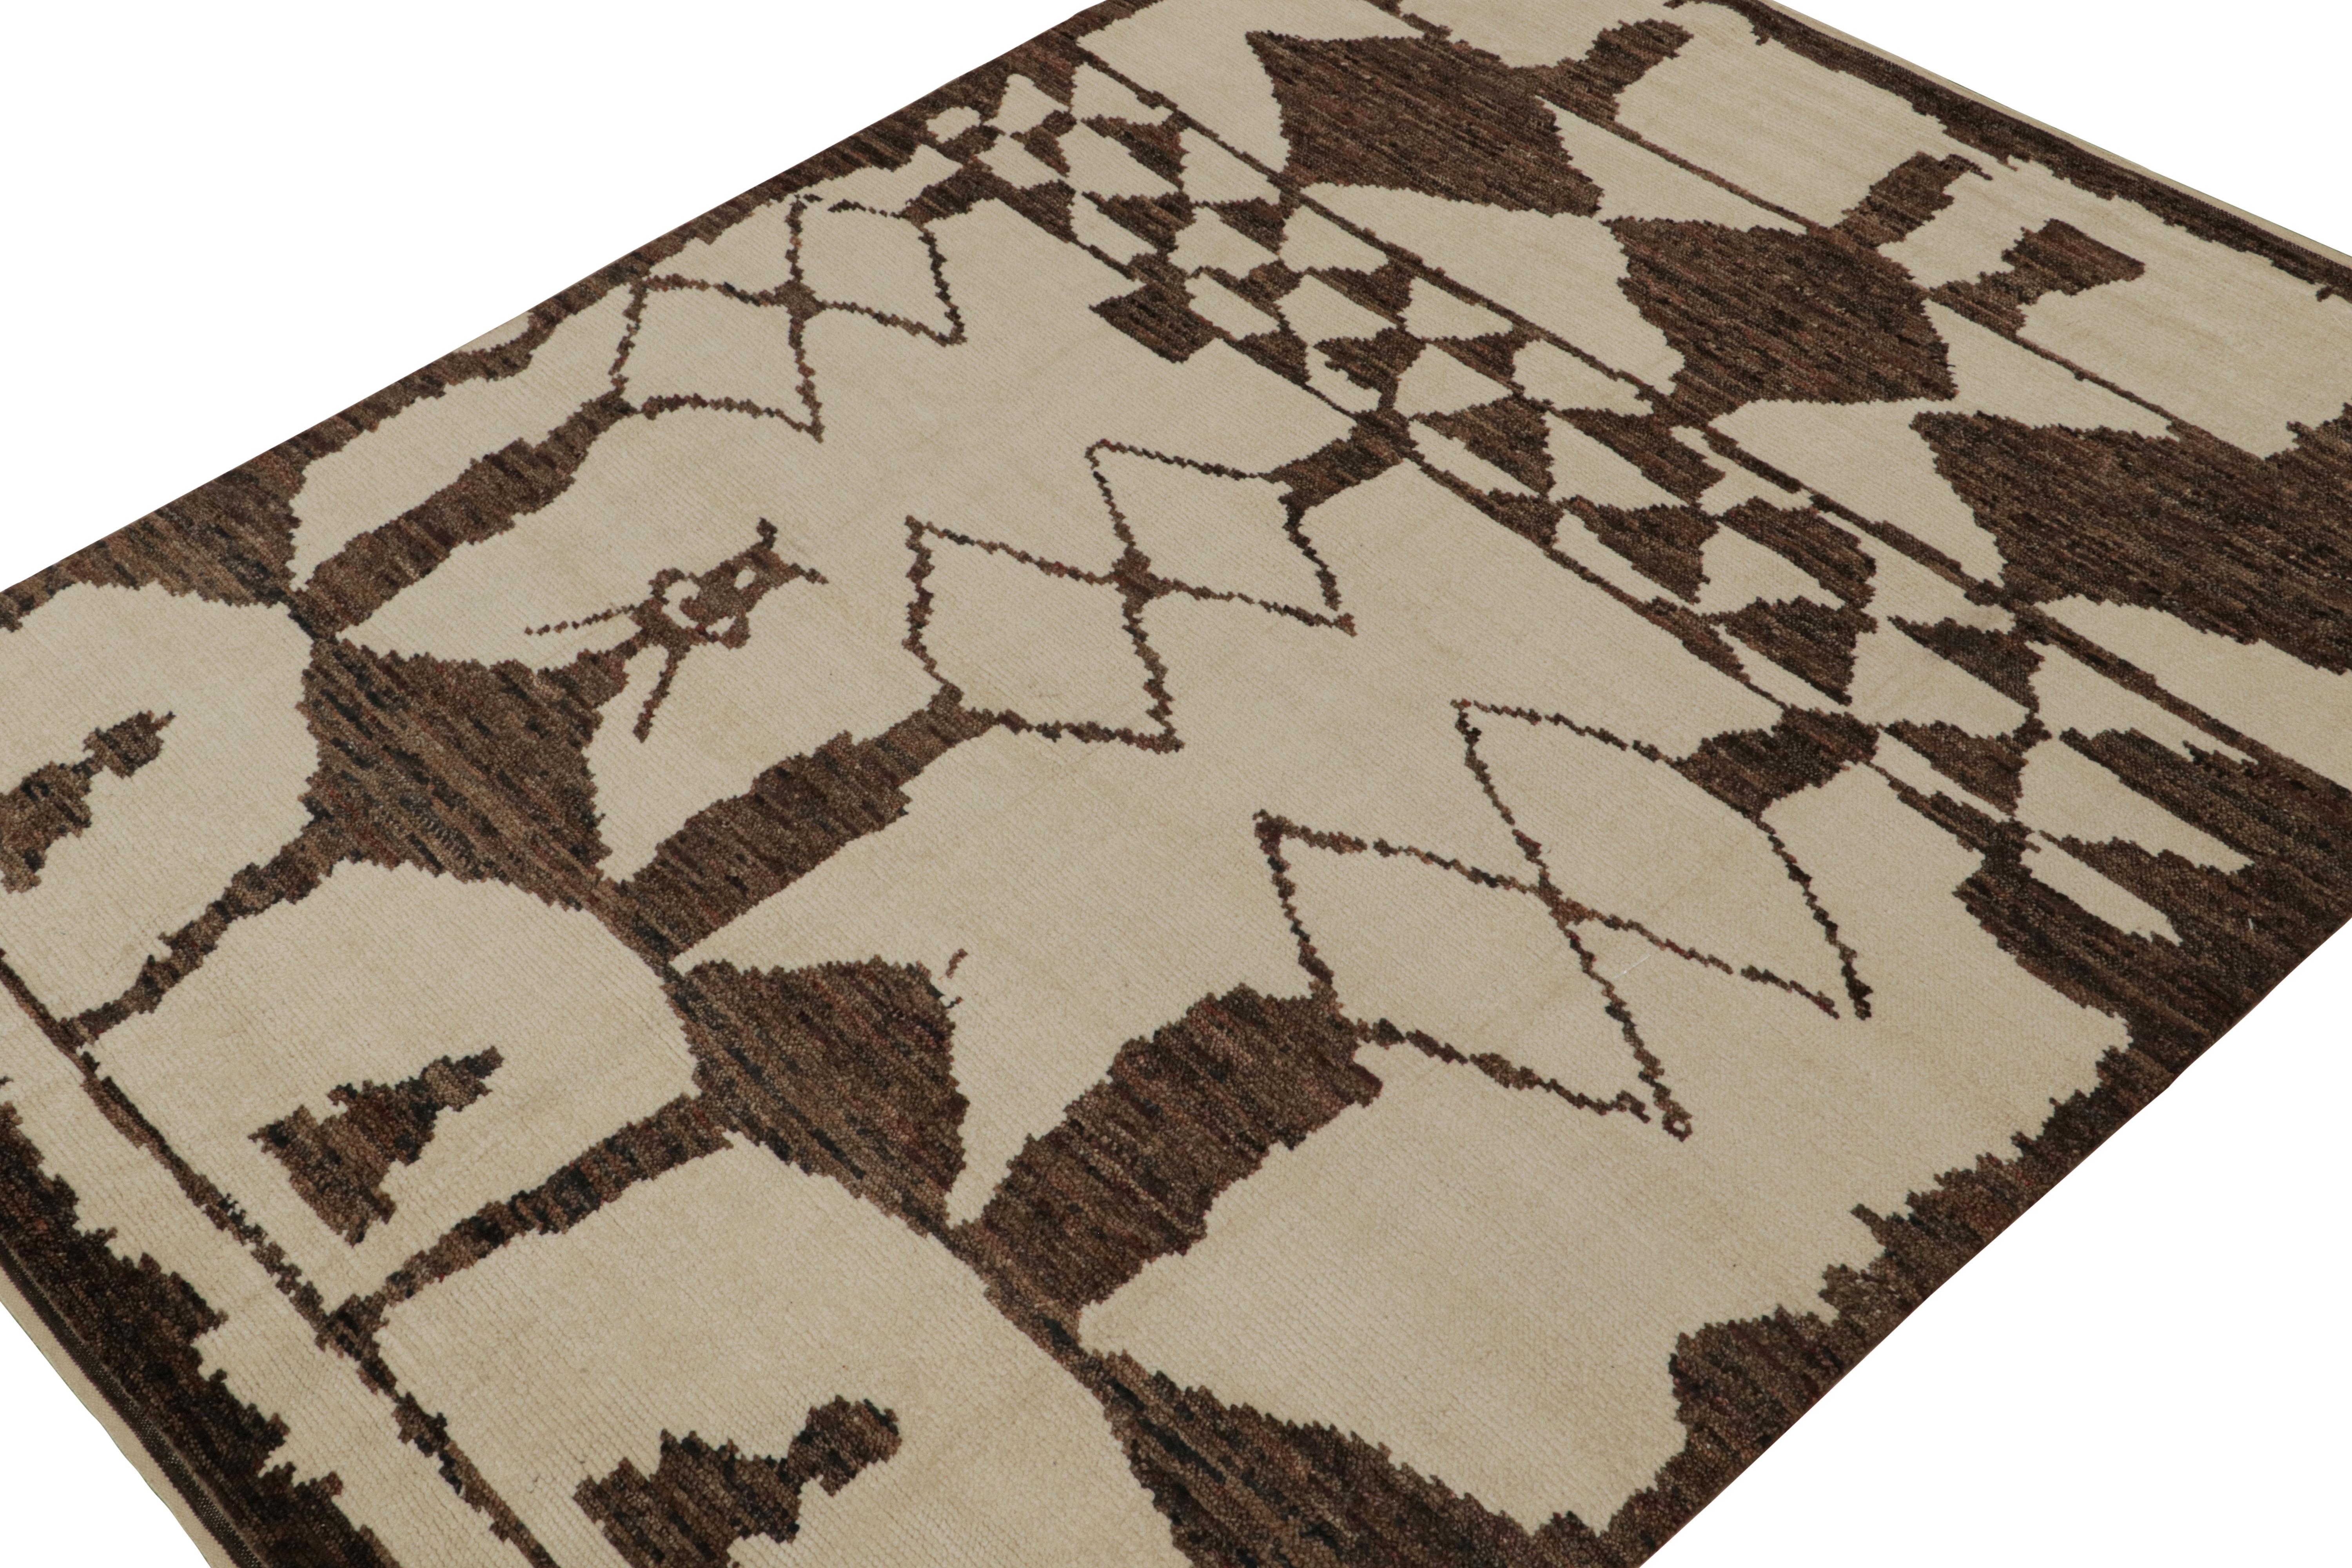 Noué à la main en laine, ce tapis contemporain 10x14 est un nouvel ajout à la collection de tapis marocains de Rug & Kilim. 

Sur le Design/One

Ce tapis est de couleur crème et beige avec des losanges brun chocolat et d'autres motifs géométriques